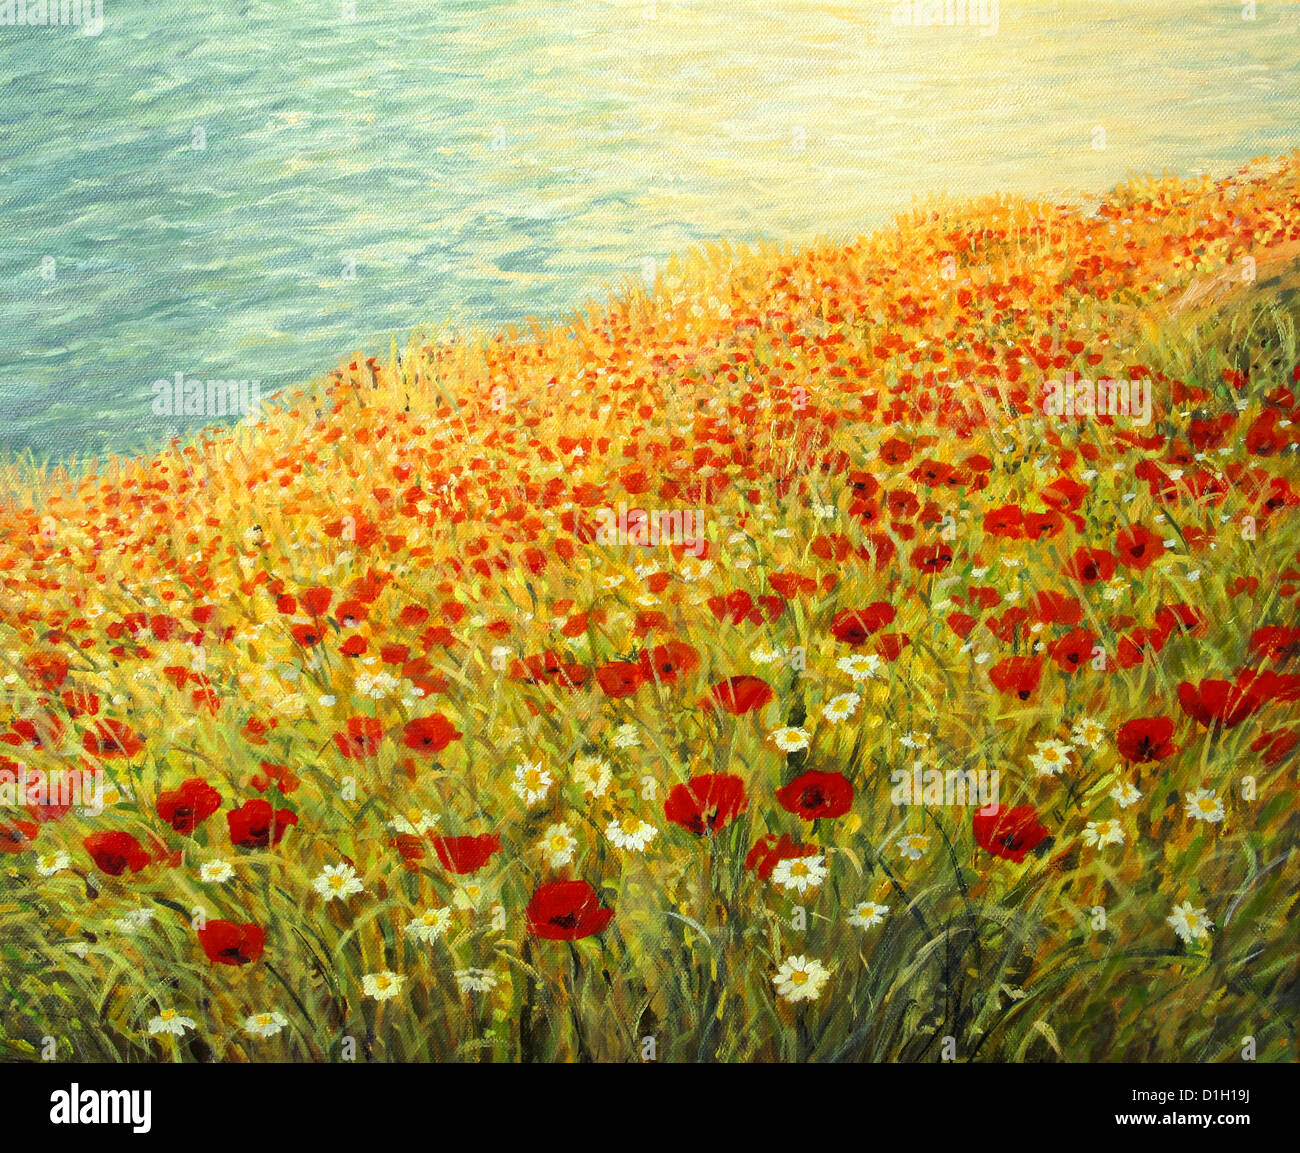 Un dipinto ad olio su tela di una scena tranquilla presso la costa del mare con tappeti colorati piena di papavero rosso e bianco margherite. Foto Stock